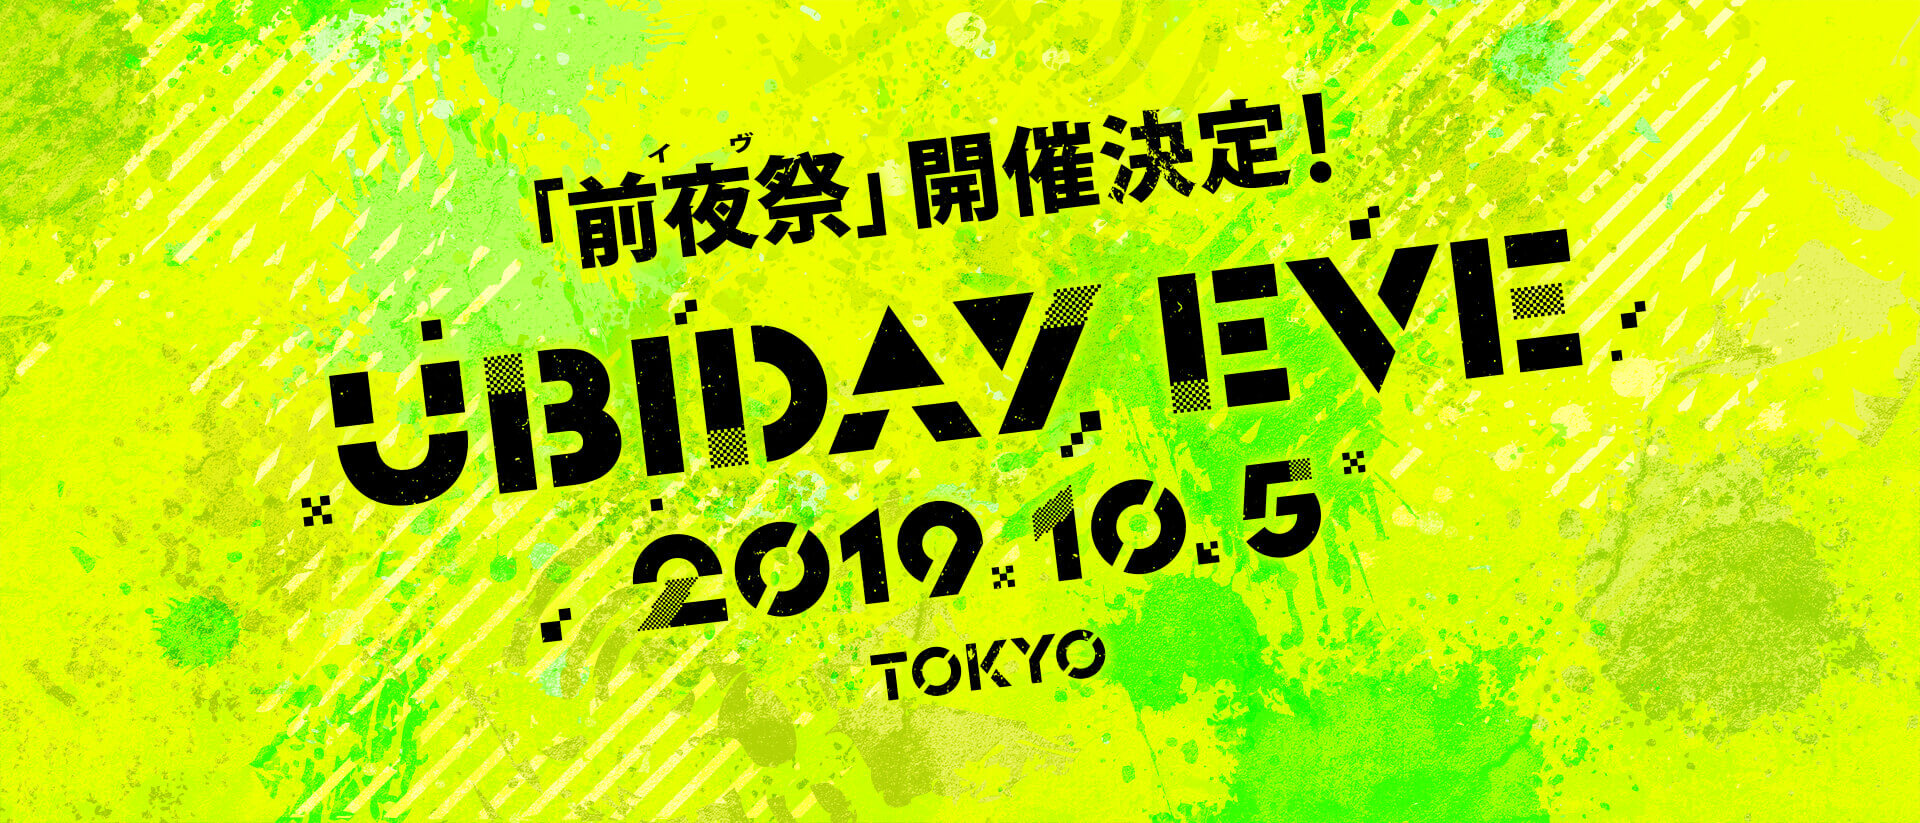 Ubiday Eve 2019.10.5 Tokyo